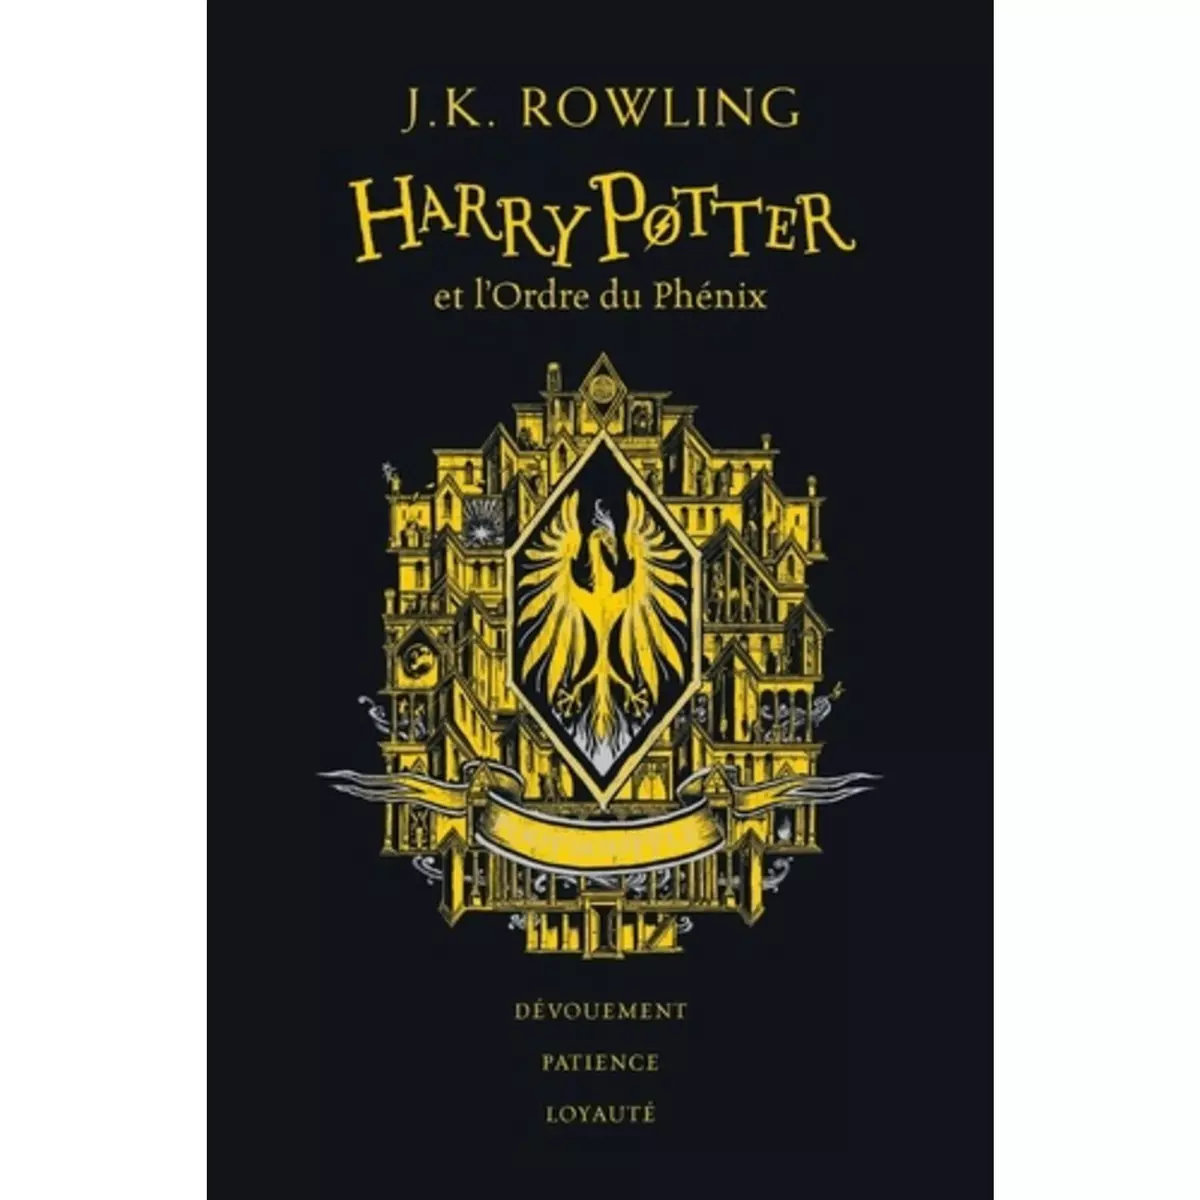  HARRY POTTER TOME 5 : HARRY POTTER ET L'ORDRE DU PHENIX (POUFSOUFFLE). EDITION COLLECTOR, Rowling J.K.